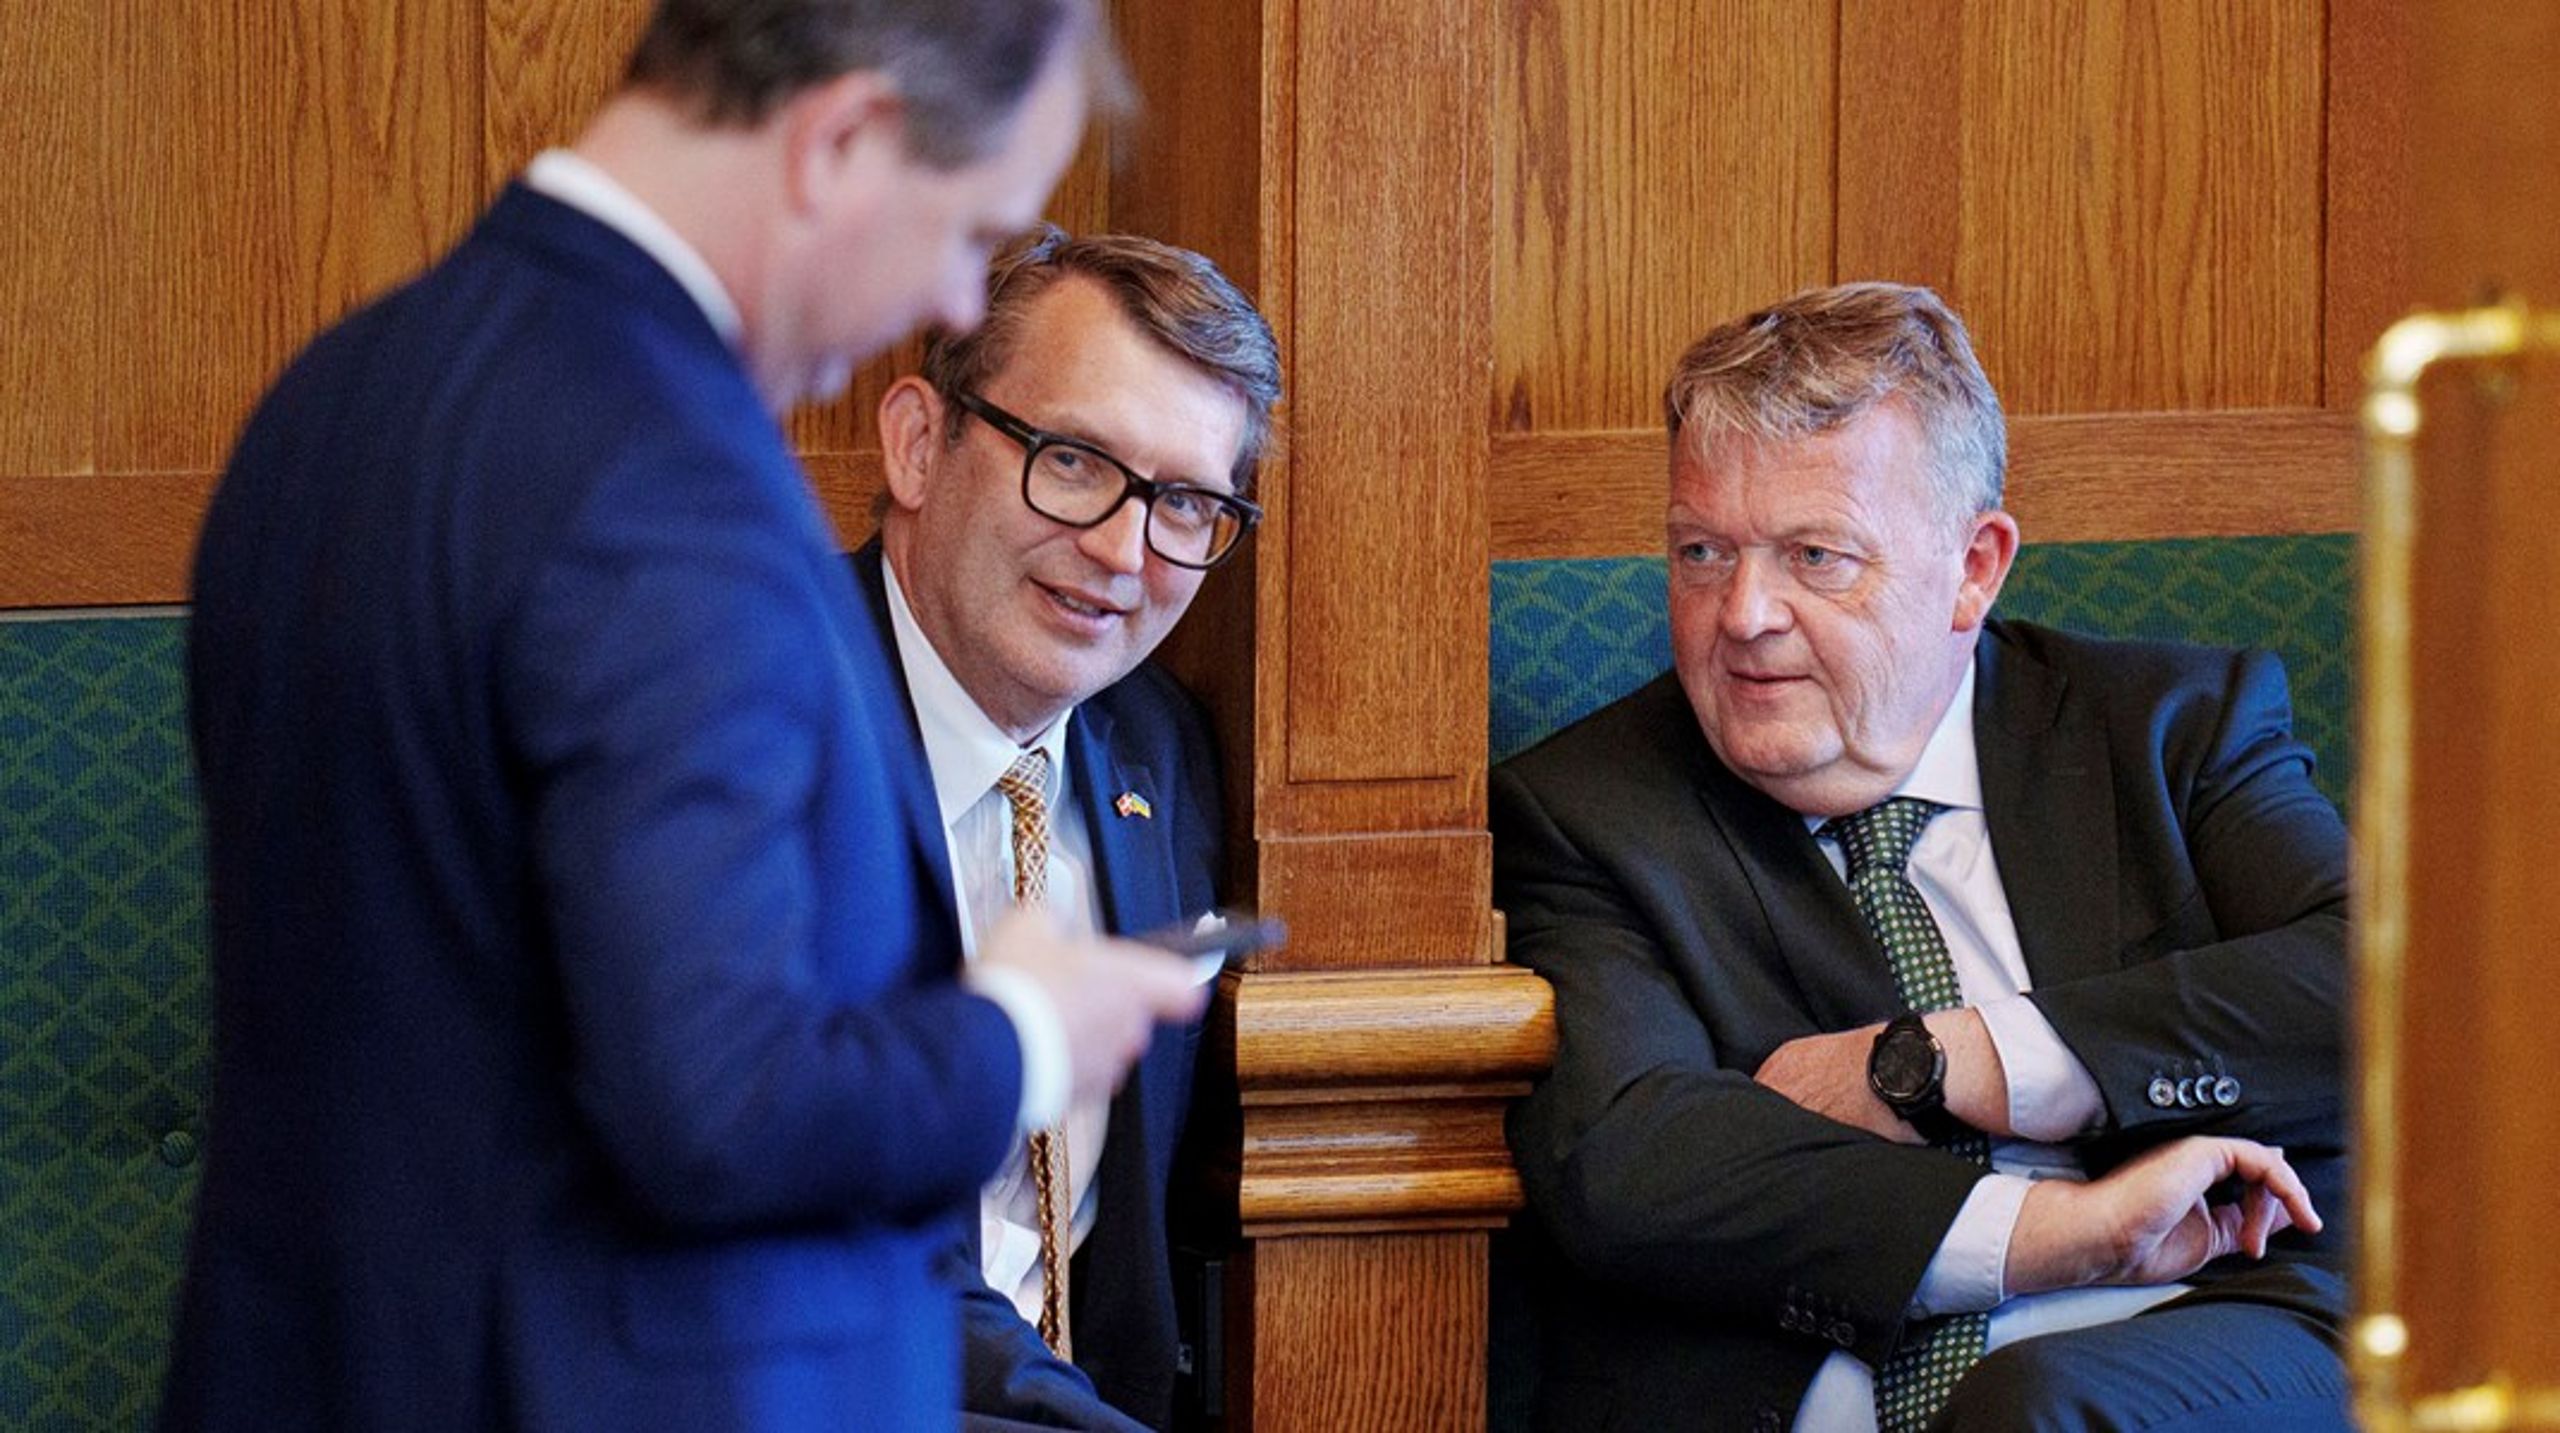 Udenrigsminister Lars Løkke Rasmussen (M) skal mandag i&nbsp;åbent samråd om våbeneksport, mens fungerende forsvarsminister Troels Lund Poulsen (V) kan se frem til et åbent samråd om vanvidsbilisten på Langebro på torsdag.